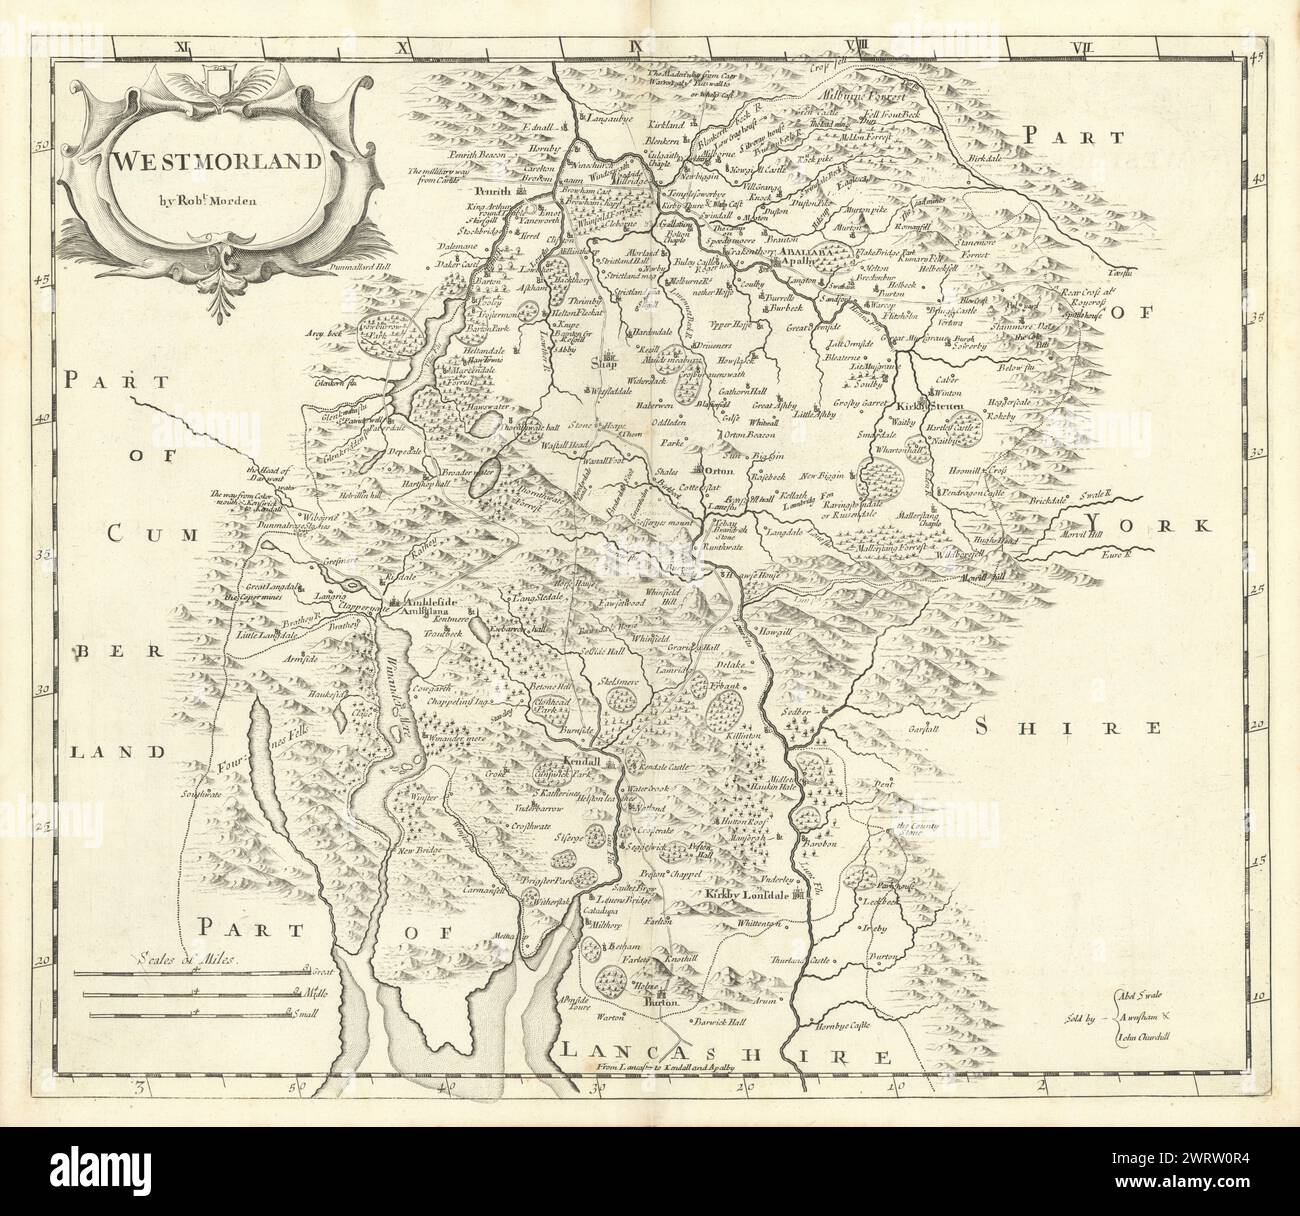 Westmoreland. "Allgäu" VON ROBERT MORDEN von Camden Britannia Karte 1722 Stockfoto